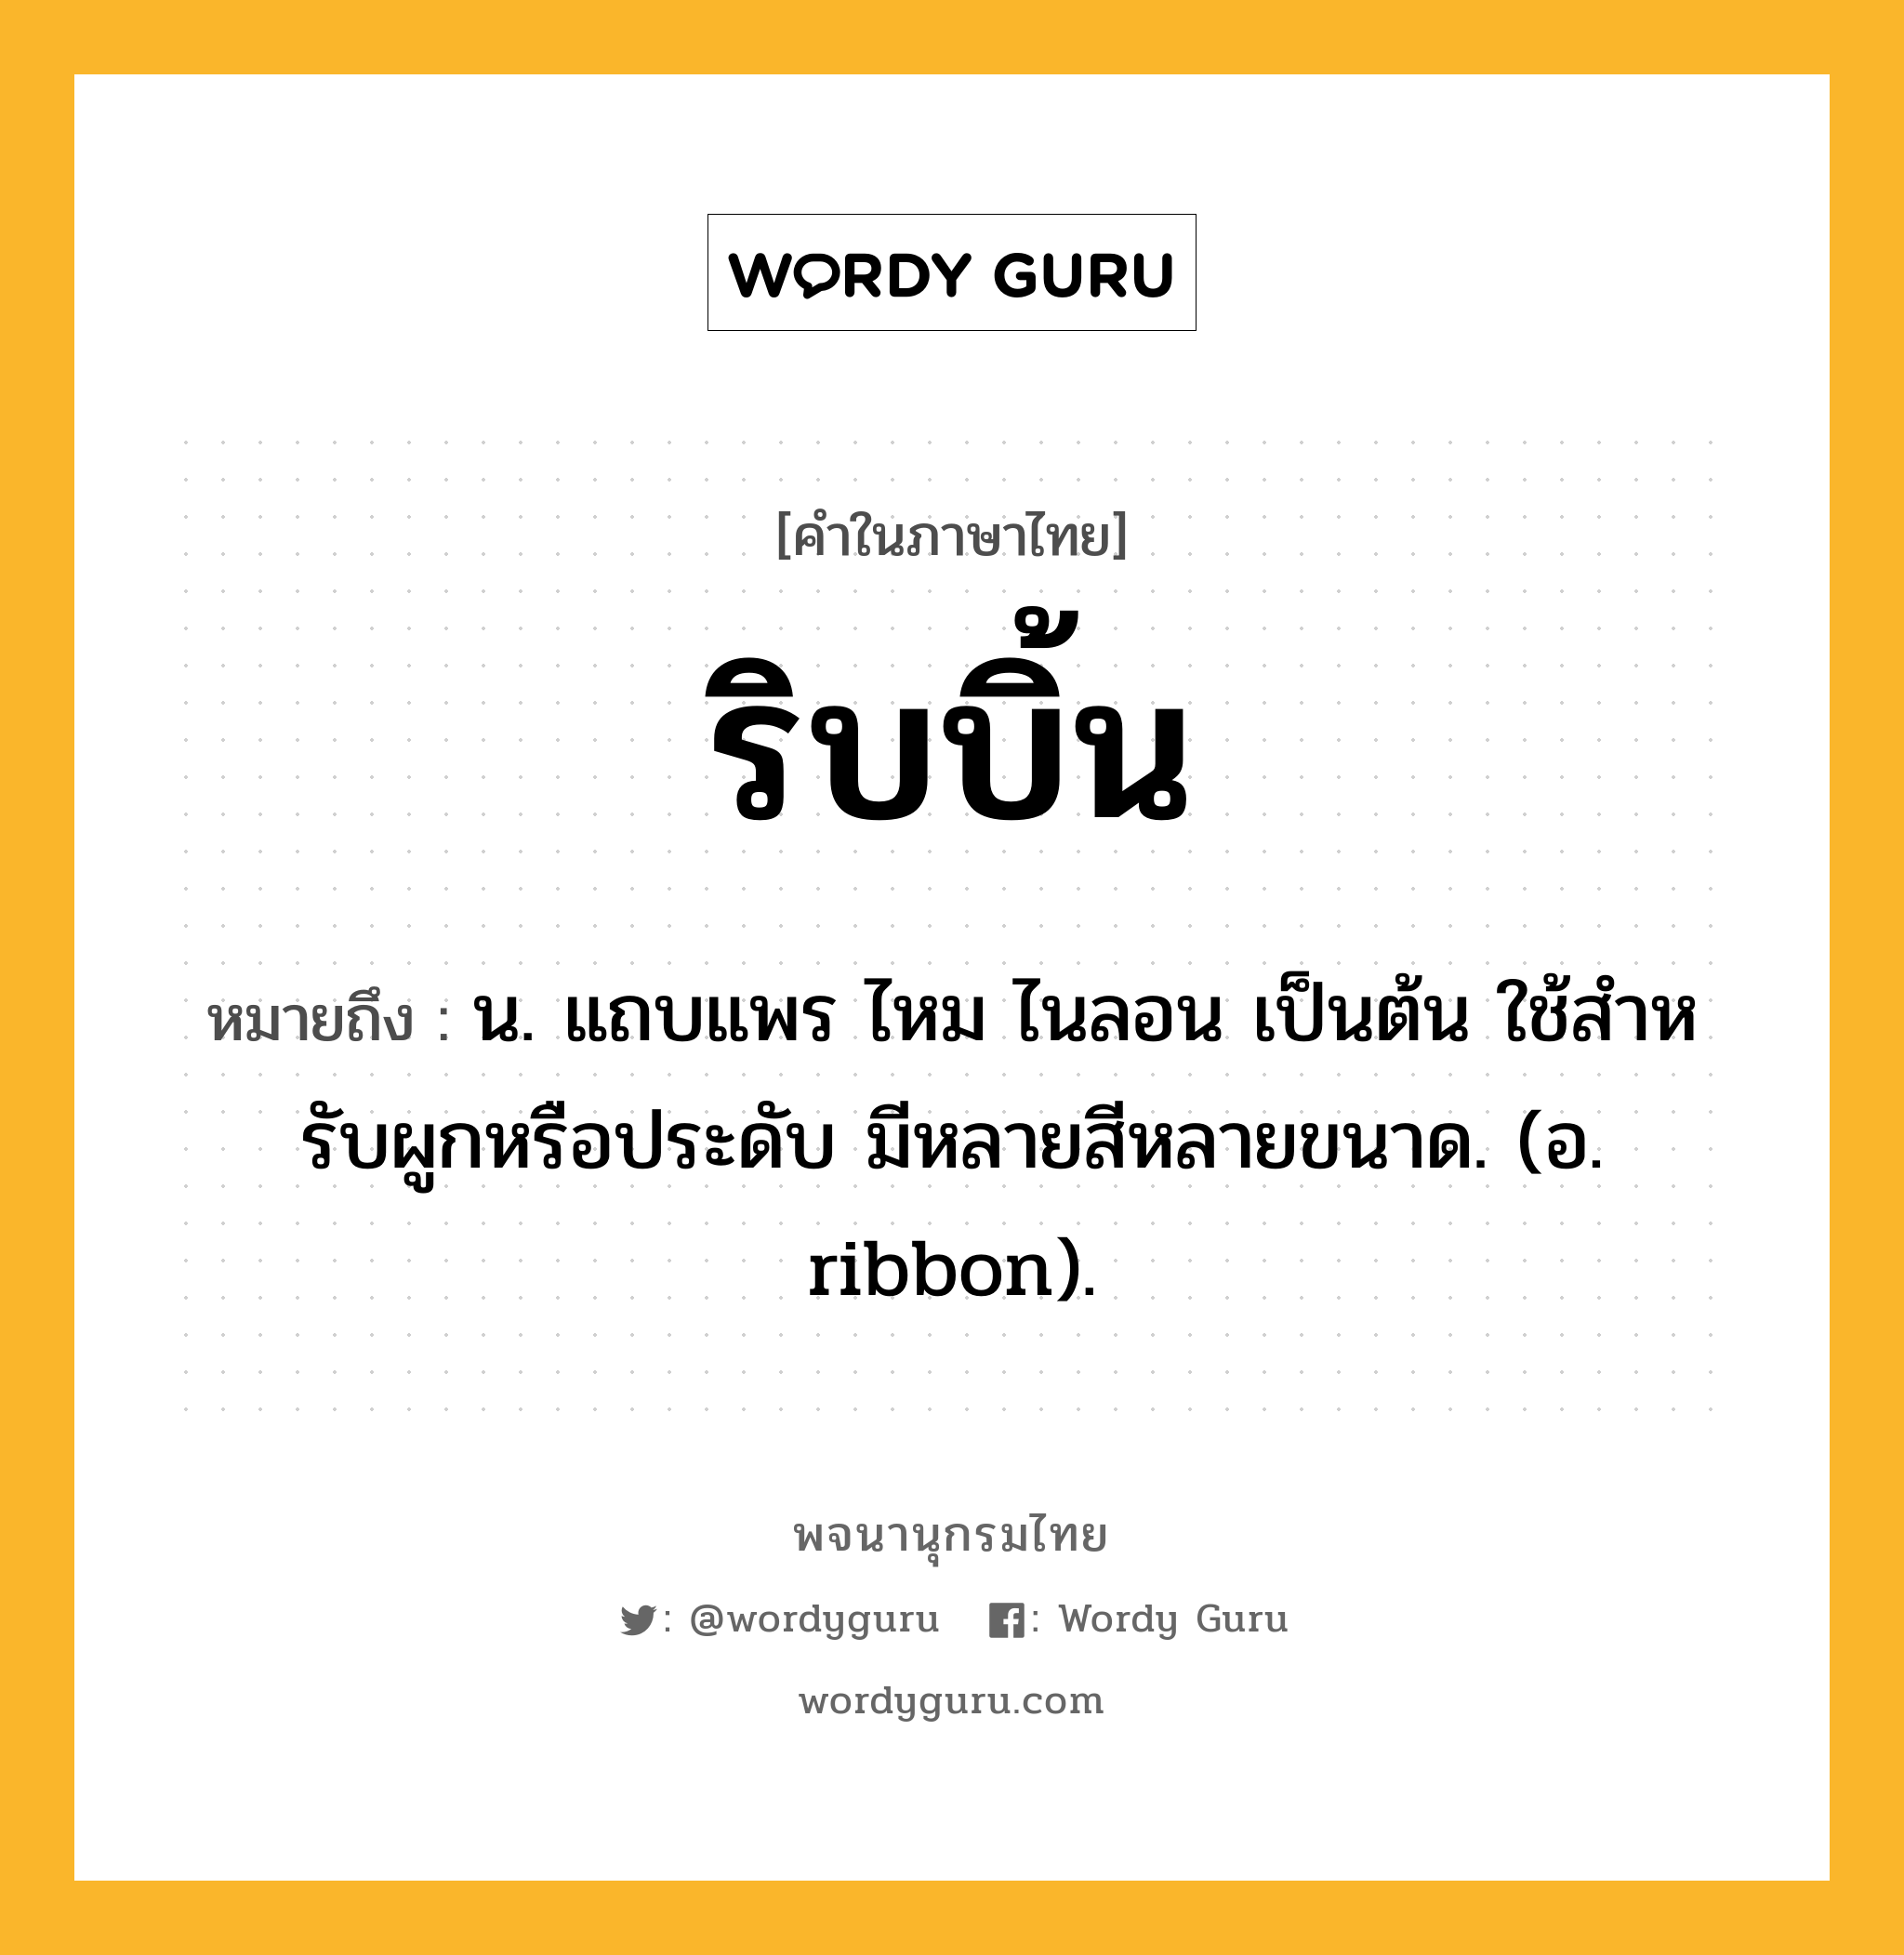 ริบบิ้น หมายถึงอะไร?, คำในภาษาไทย ริบบิ้น หมายถึง น. แถบแพร ไหม ไนลอน เป็นต้น ใช้สําหรับผูกหรือประดับ มีหลายสีหลายขนาด. (อ. ribbon).